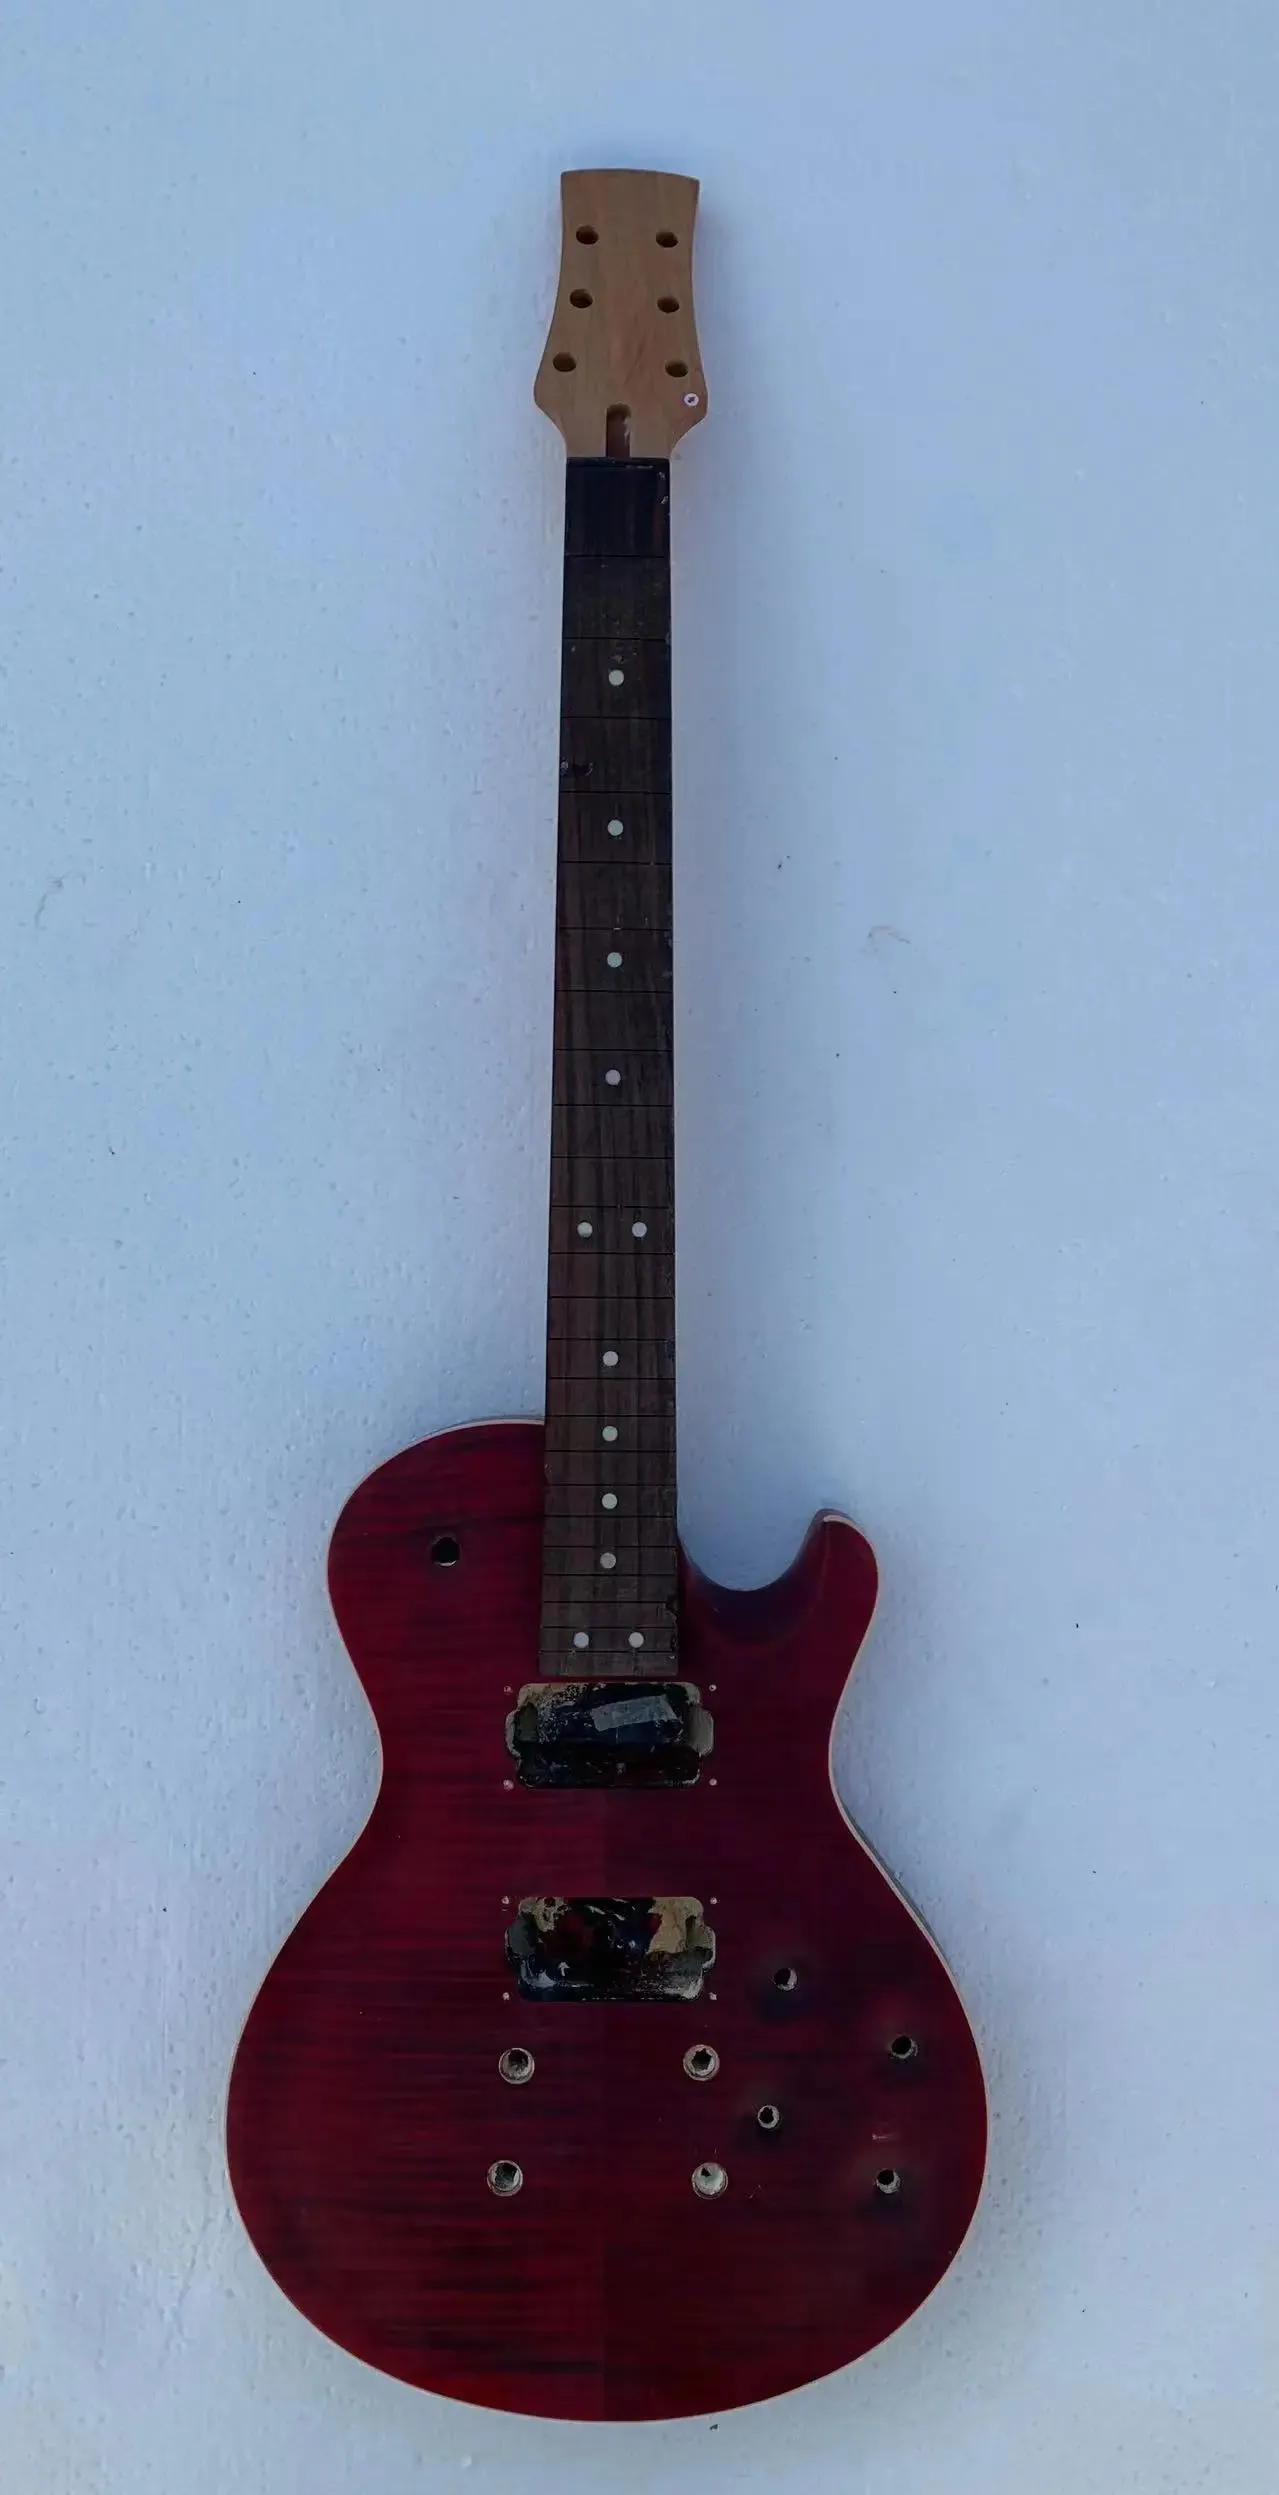 Charm Diy Custom 6-струнная электрогитара Chavl (не новая) Guitarra Tiger Maple Top без фурнитуры на складе, скидка, бесплатная доставка